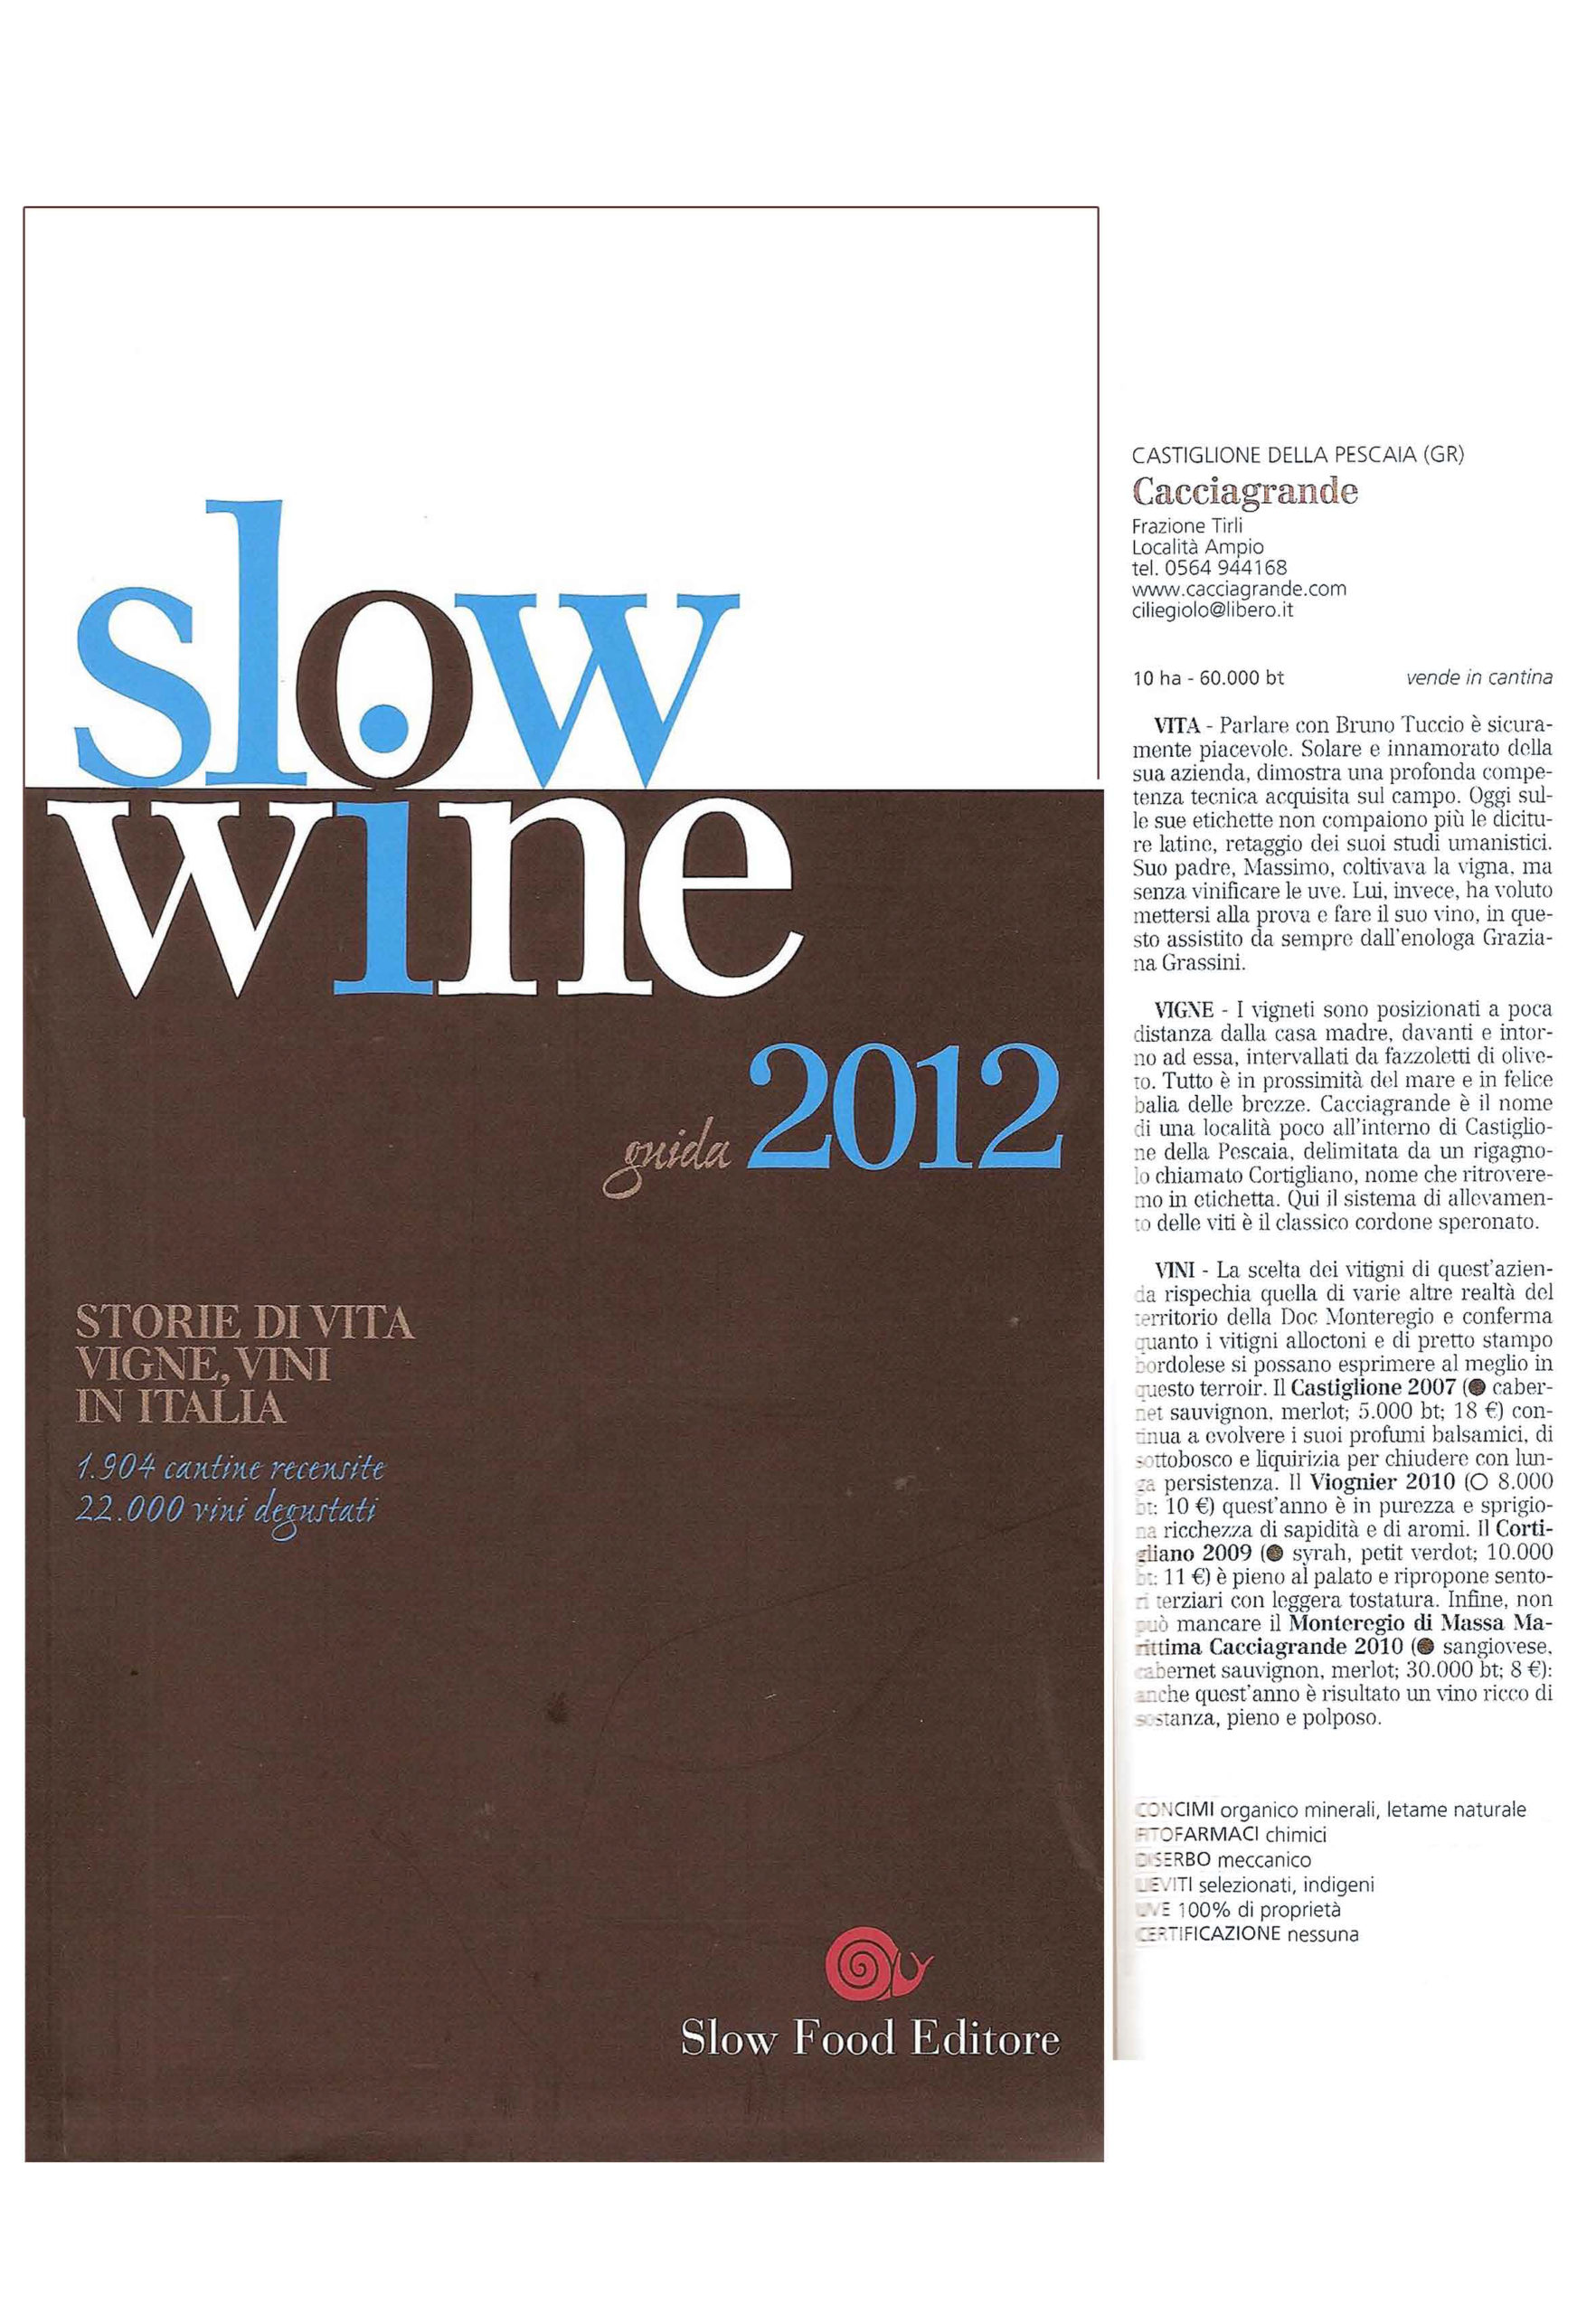 Slow Wine 2012 - Vini in Italia. Recensione Azienda Vinicola Cacciagrande